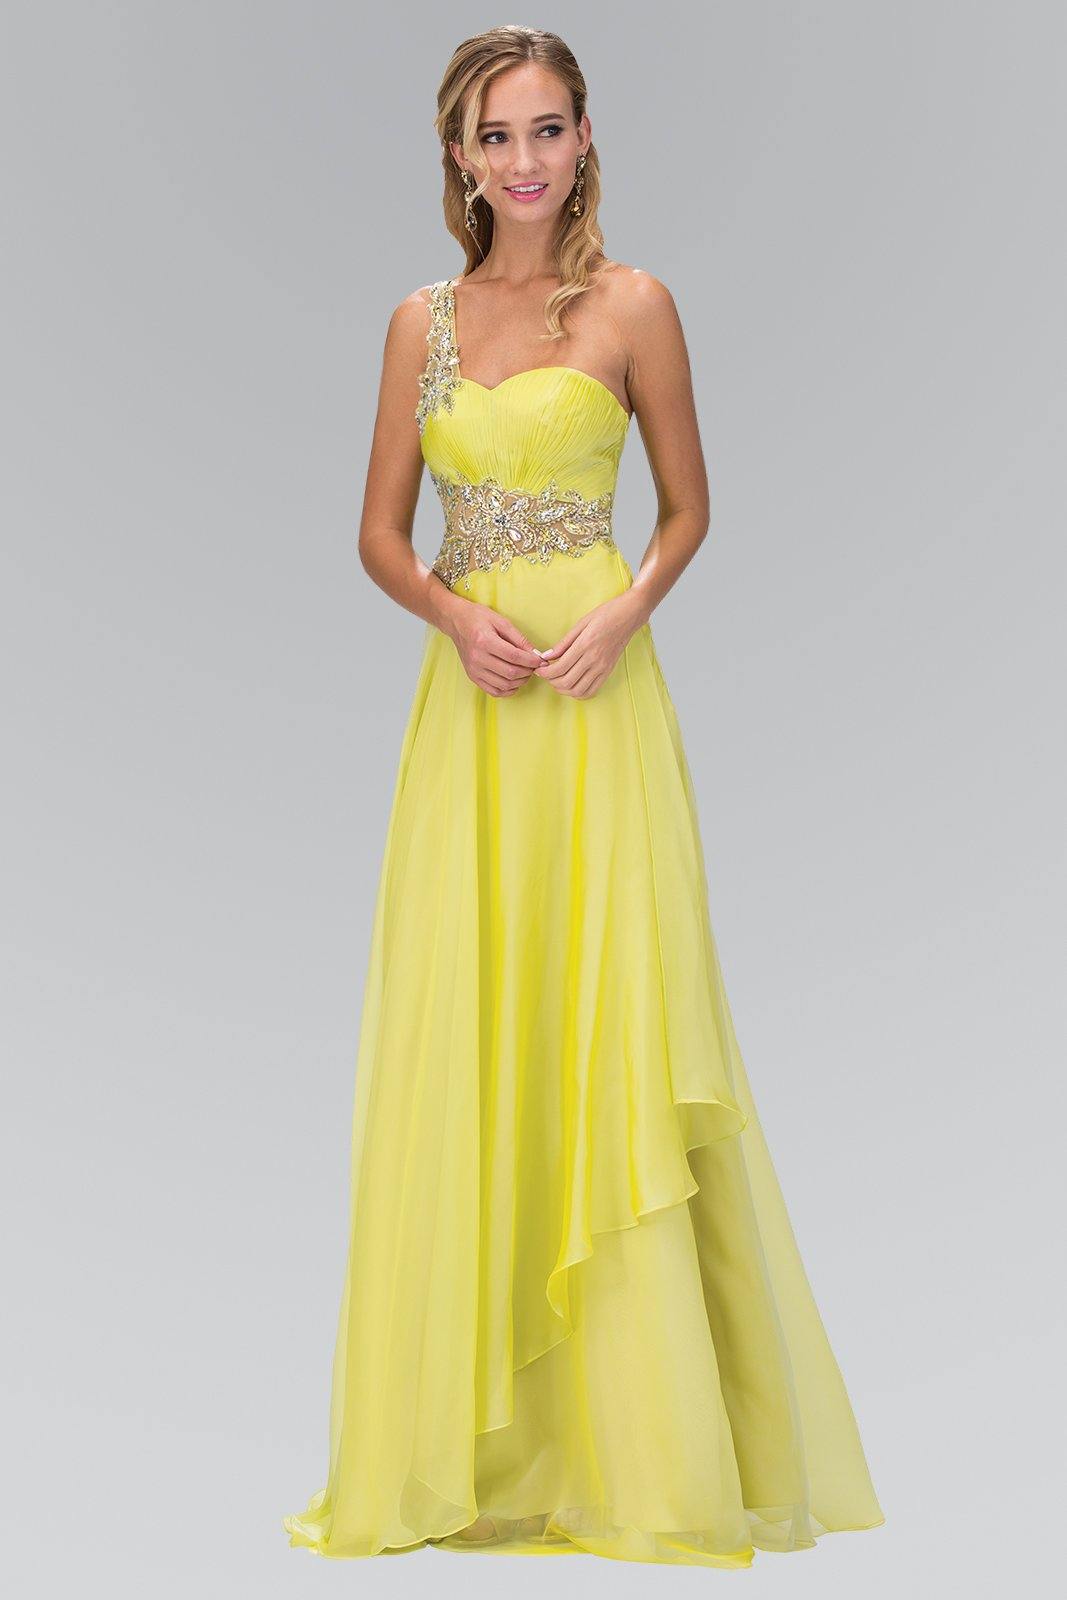 Jewel Embellished Long Prom Dress - The Dress Outlet Elizabeth K